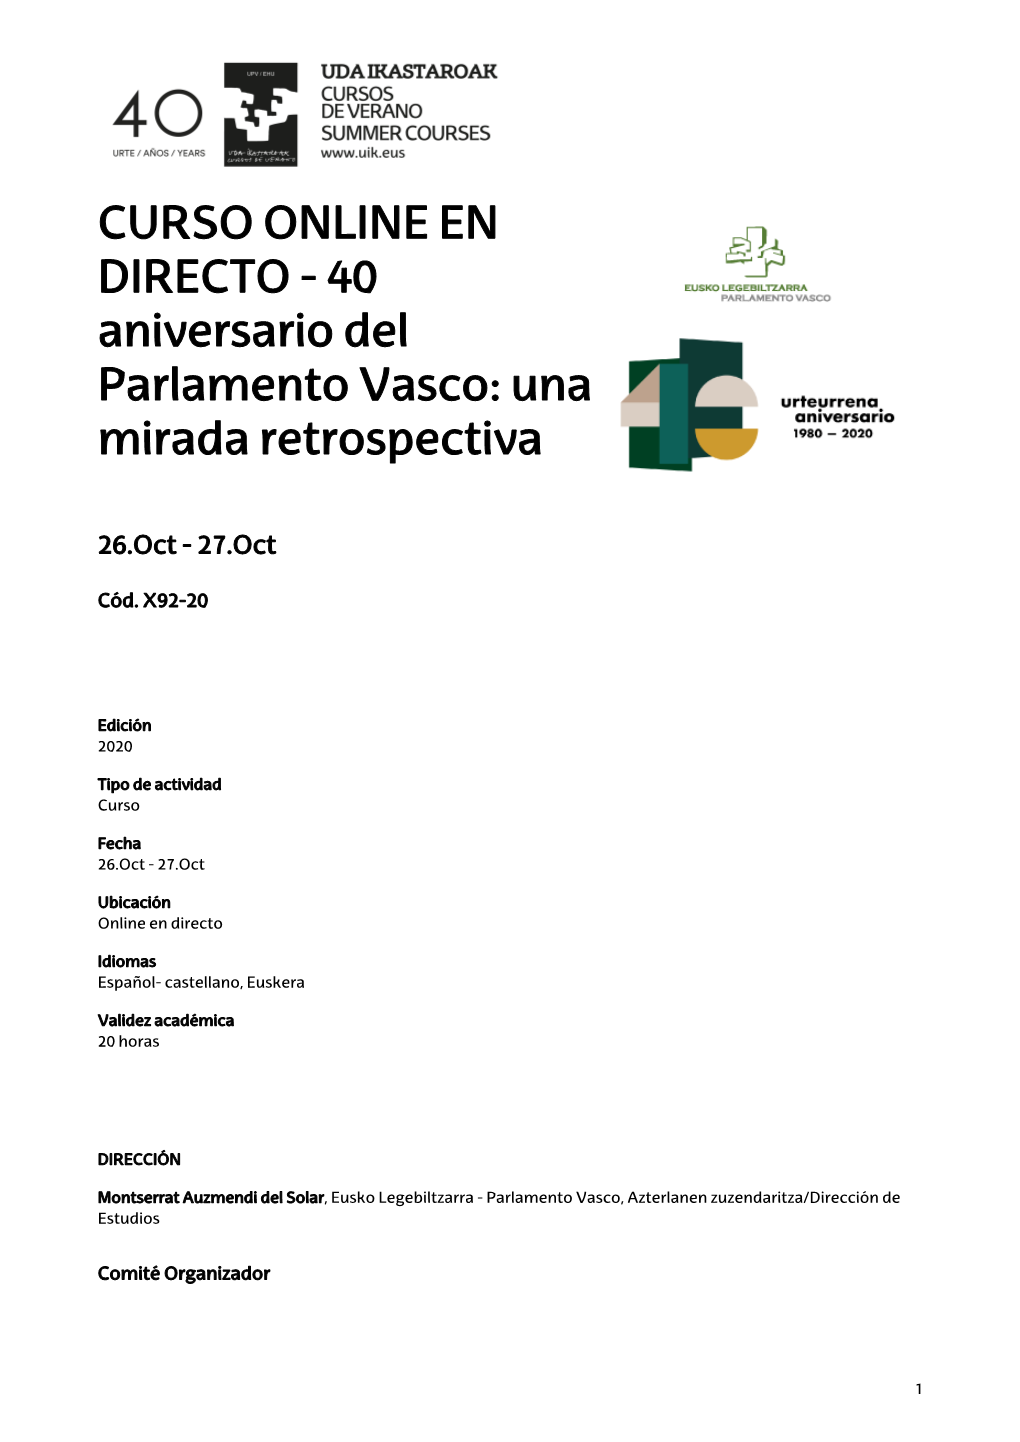 CURSO ONLINE EN DIRECTO - 40 Aniversario Del Parlamento Vasco: Una Mirada Retrospectiva